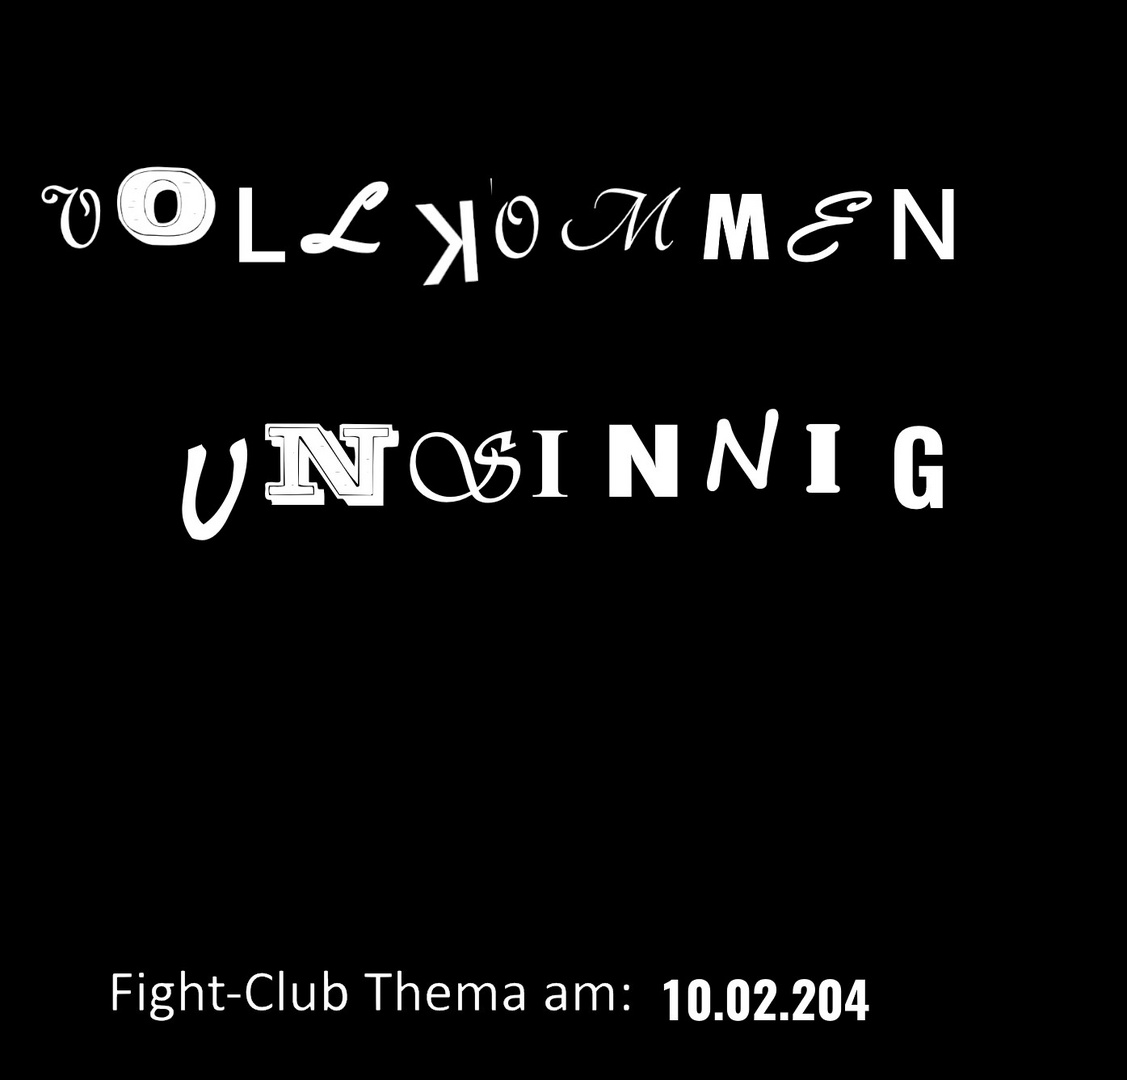 Fight-Club Thema am 10.02.204: Vollkommen unsinnig 